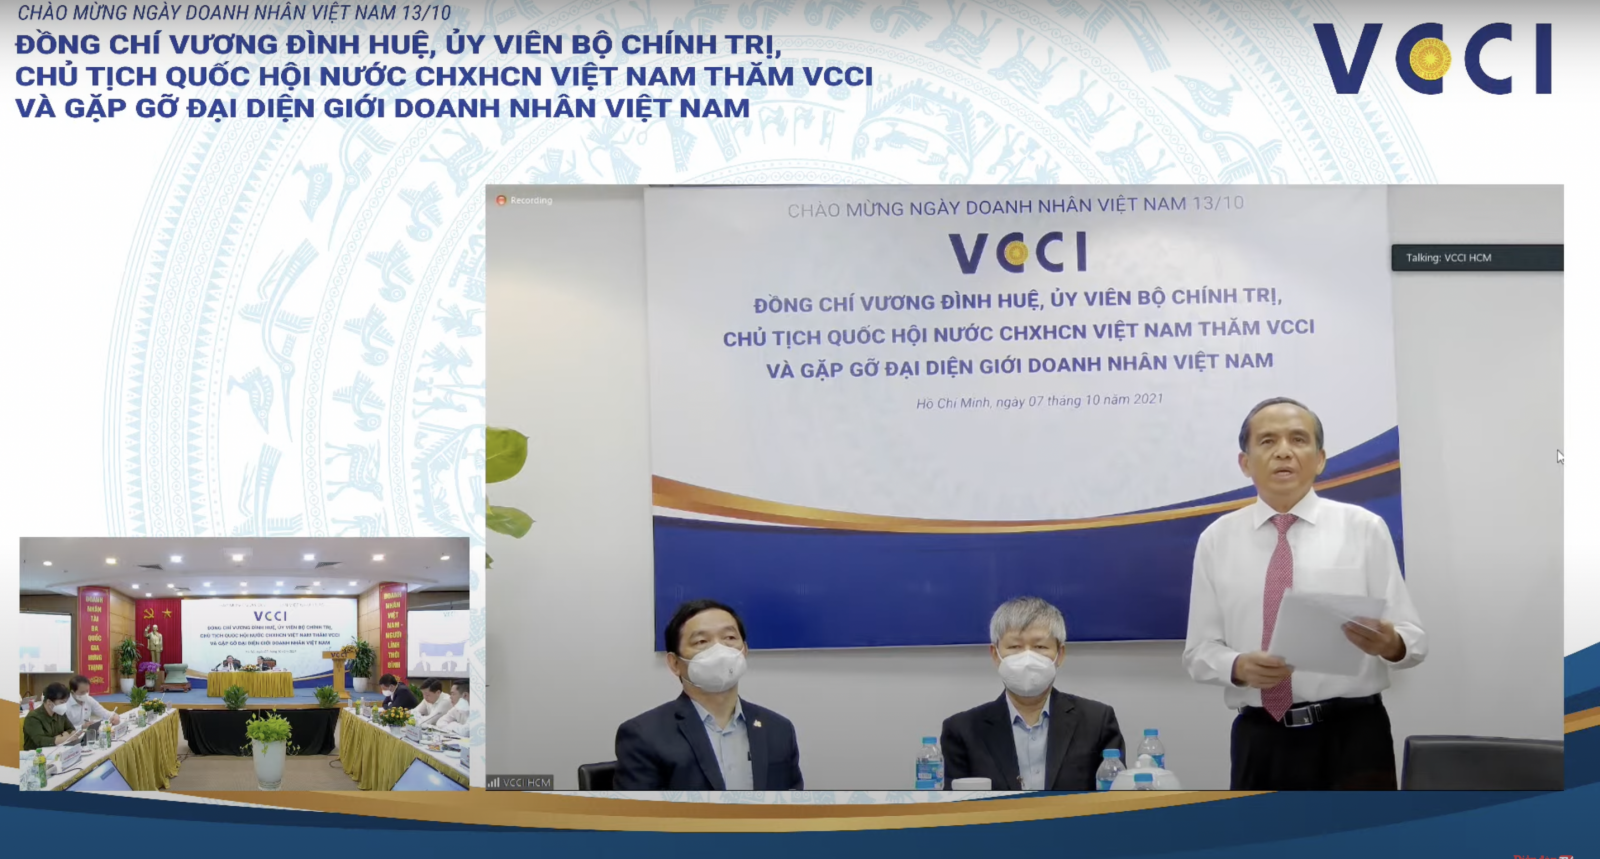 ông Lê Hoàng Châu, Chủ tịch Hiệp hội Bất động sản Thành phố Hồ Chí Minh (HoREA) tại buổi gặp gỡ của Chủ tịch Quốc hội Vương Đình Huệ với VCCI và gặp gỡ đại diện giới doanh nhân Việt Nam.